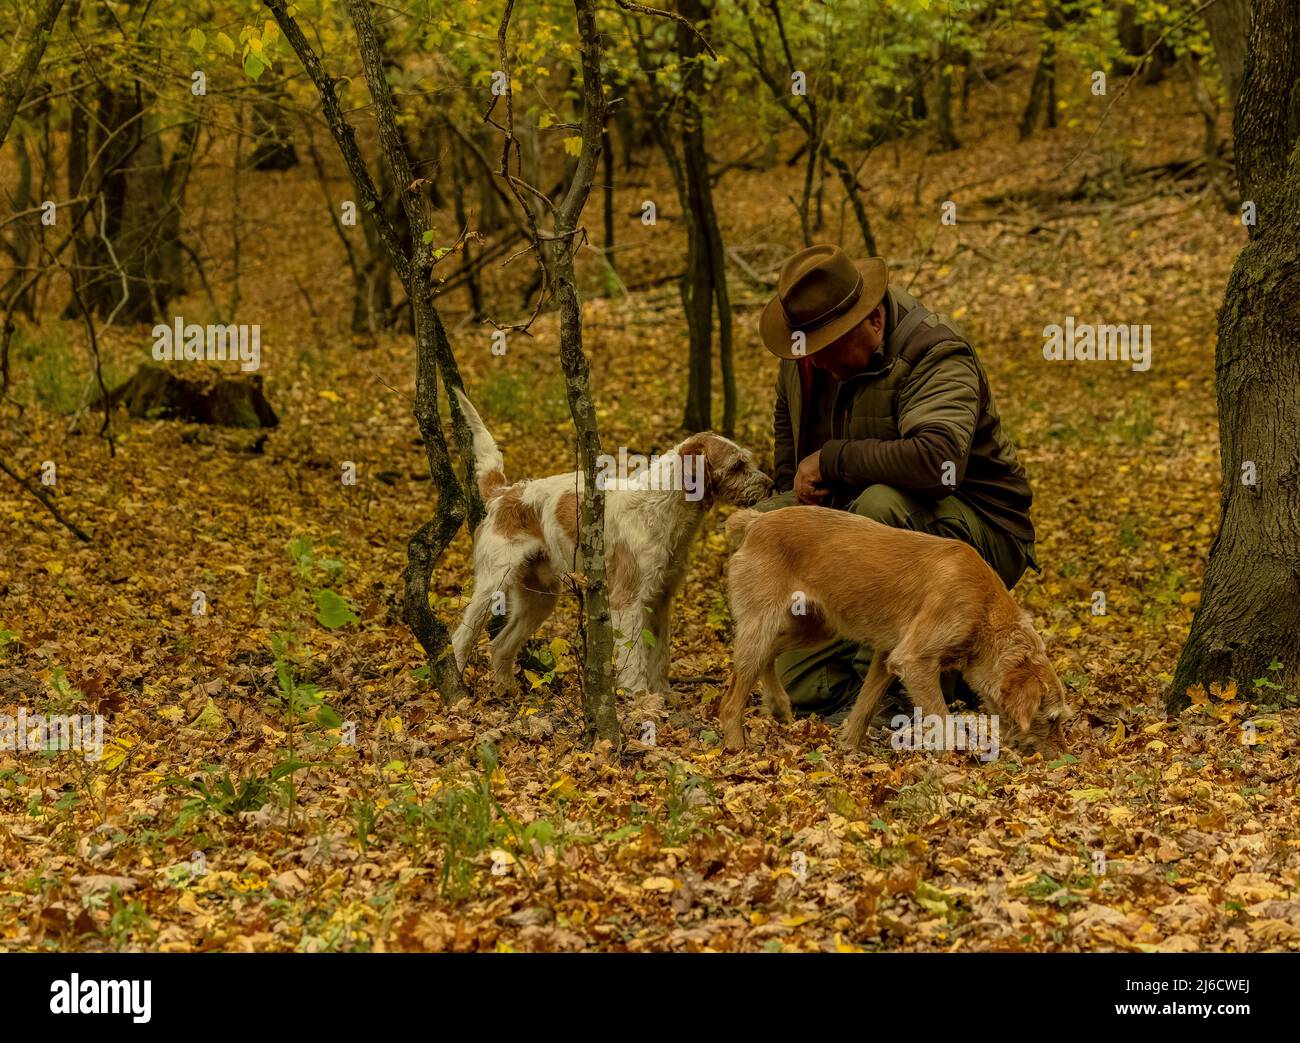 Le chasseur de truffes roumain et ses chiens dans les vieux bois en automne, près d'Archita, Transylvanie saxonne. Roumanie. Banque D'Images